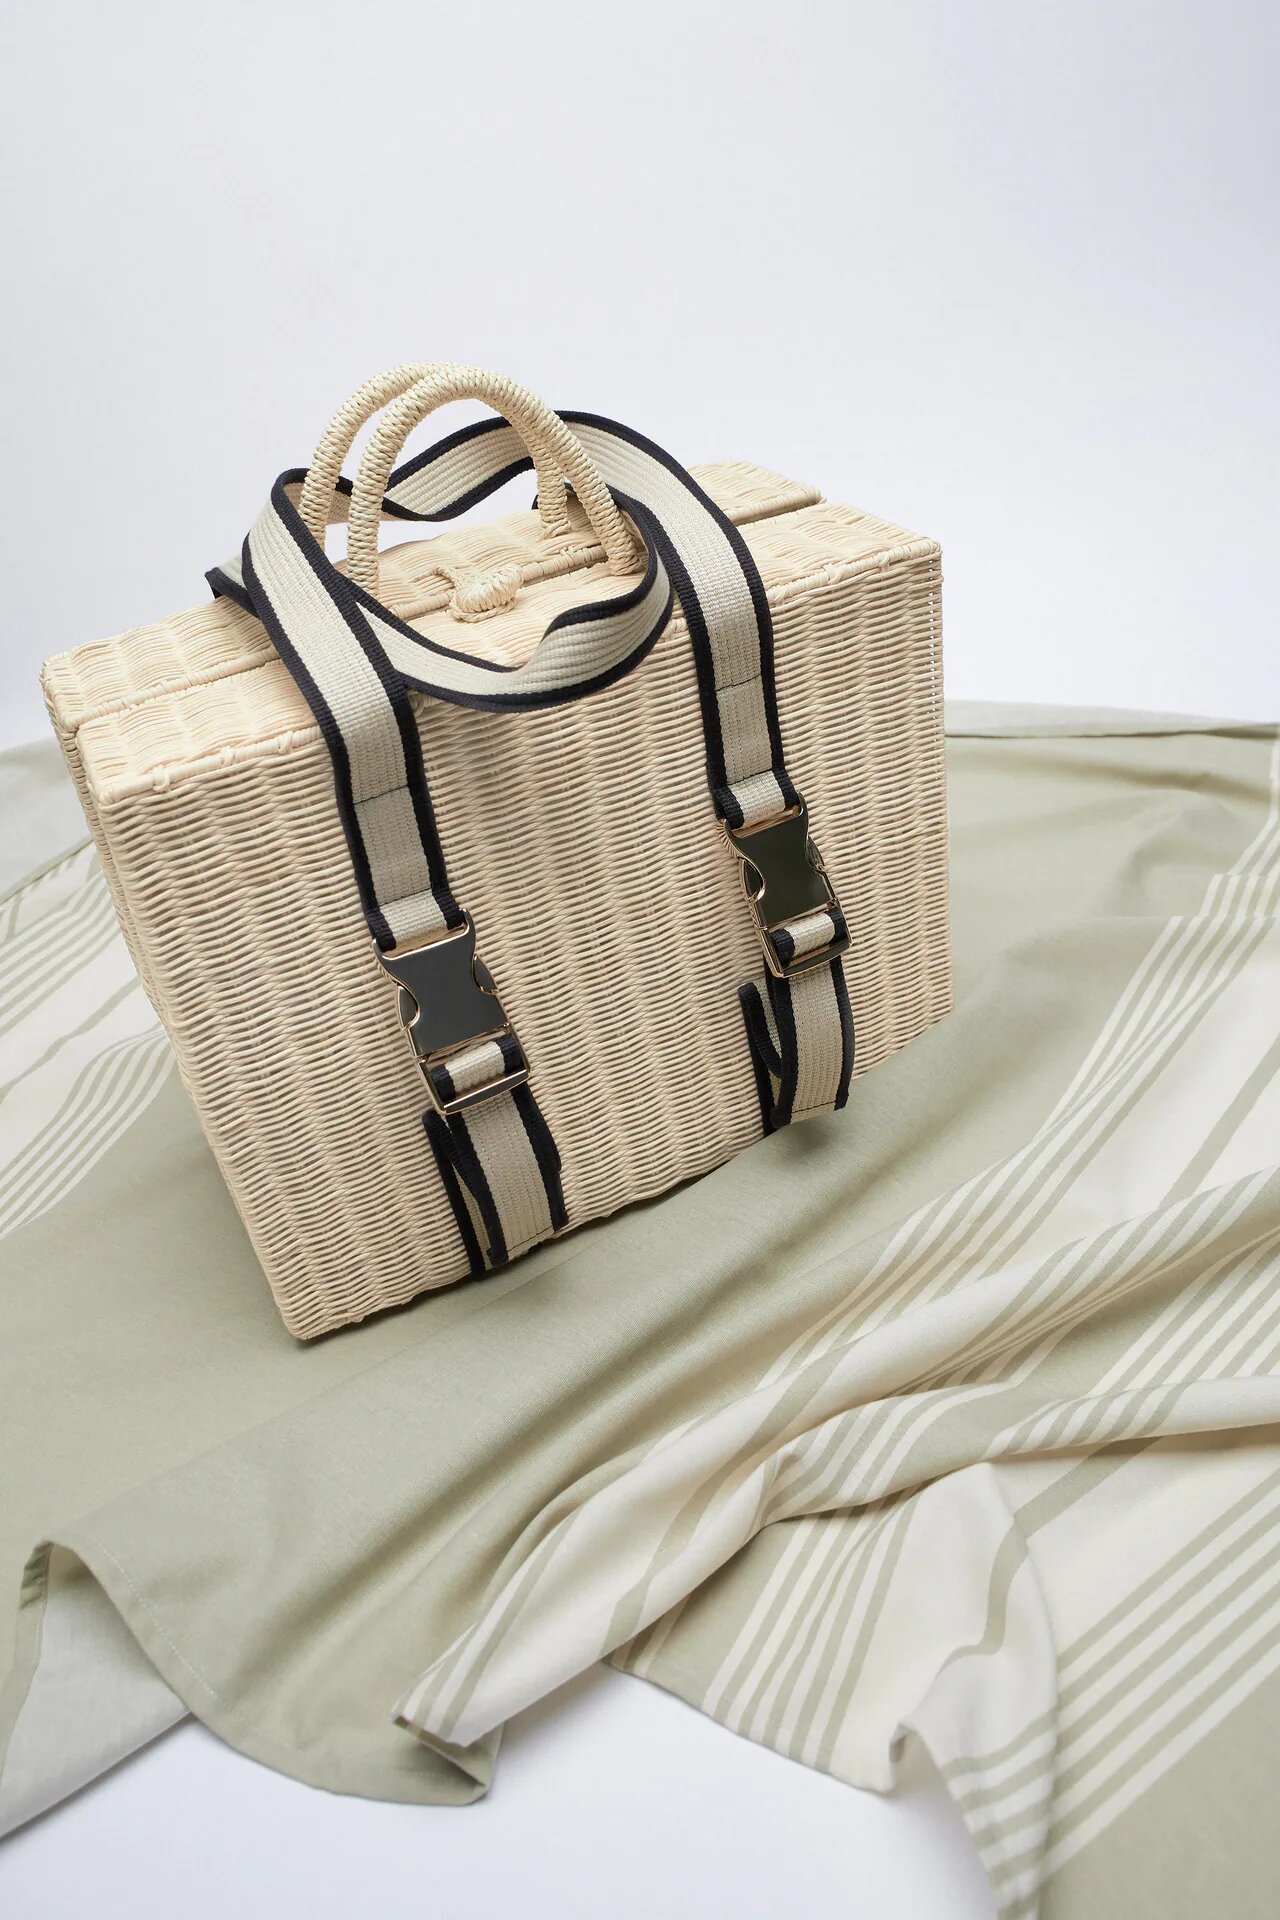 Zara lanza una colección de cestas de picnic perfectas para el verano